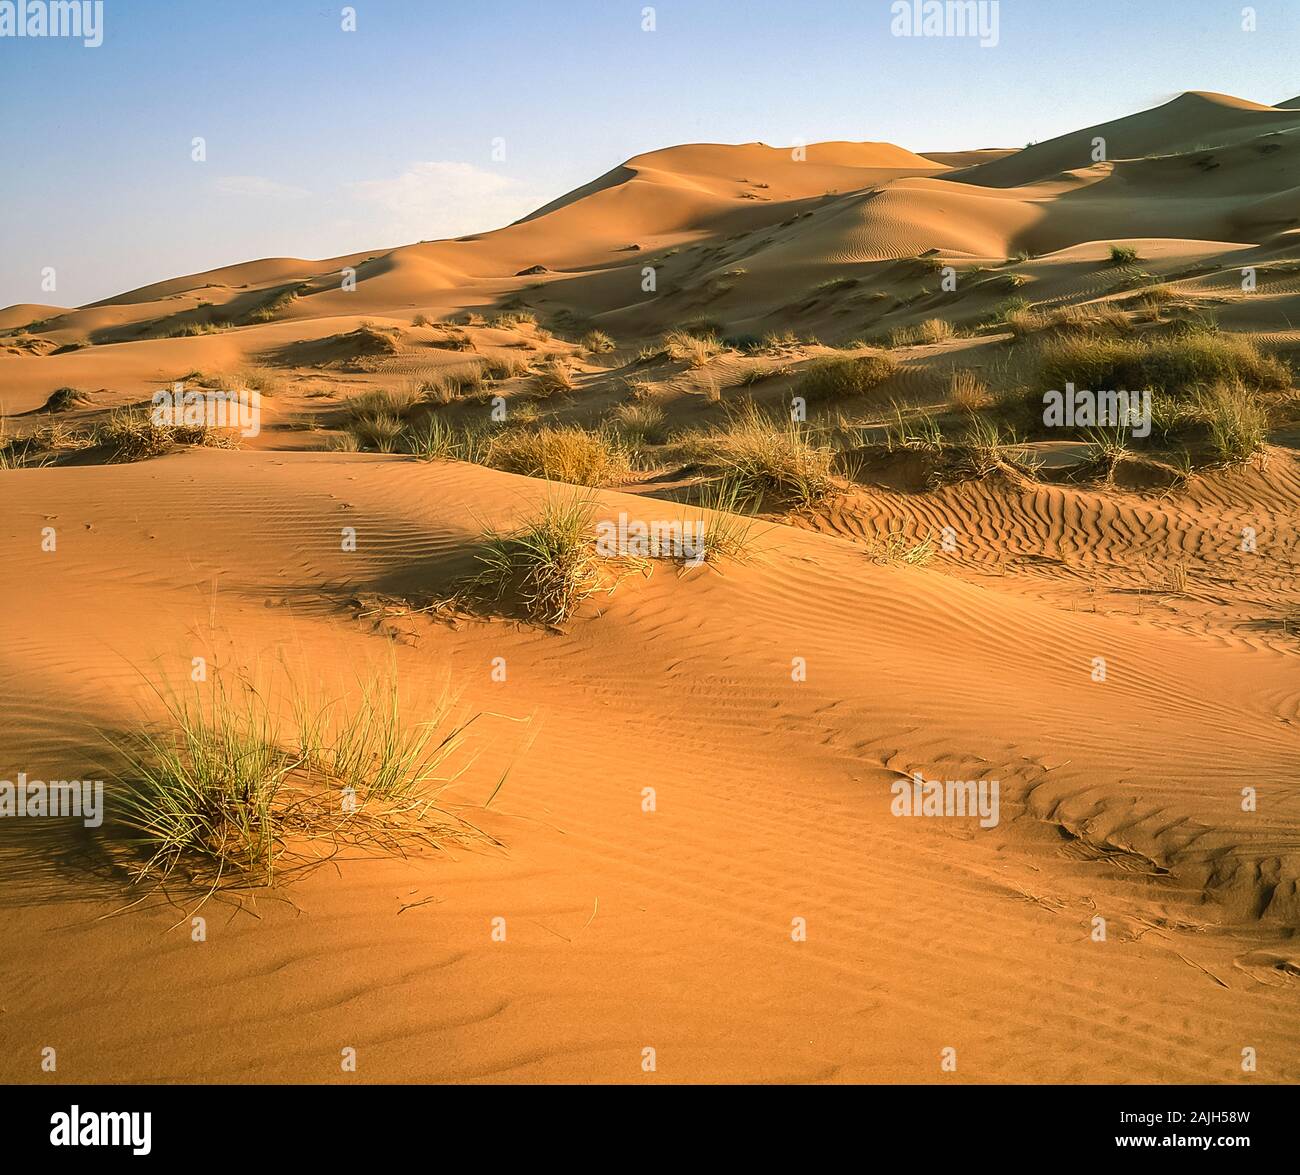 Dubai. Schöne Wüstenlandschaft mit natürlichen, von Wind verwehten Sanddünen in der Nähe des Dorfes Al Dhaid am Straßenrand zwischen der Stadt Dubai und der ländlichen Festung Oasis Stadt Hatta Stockfoto